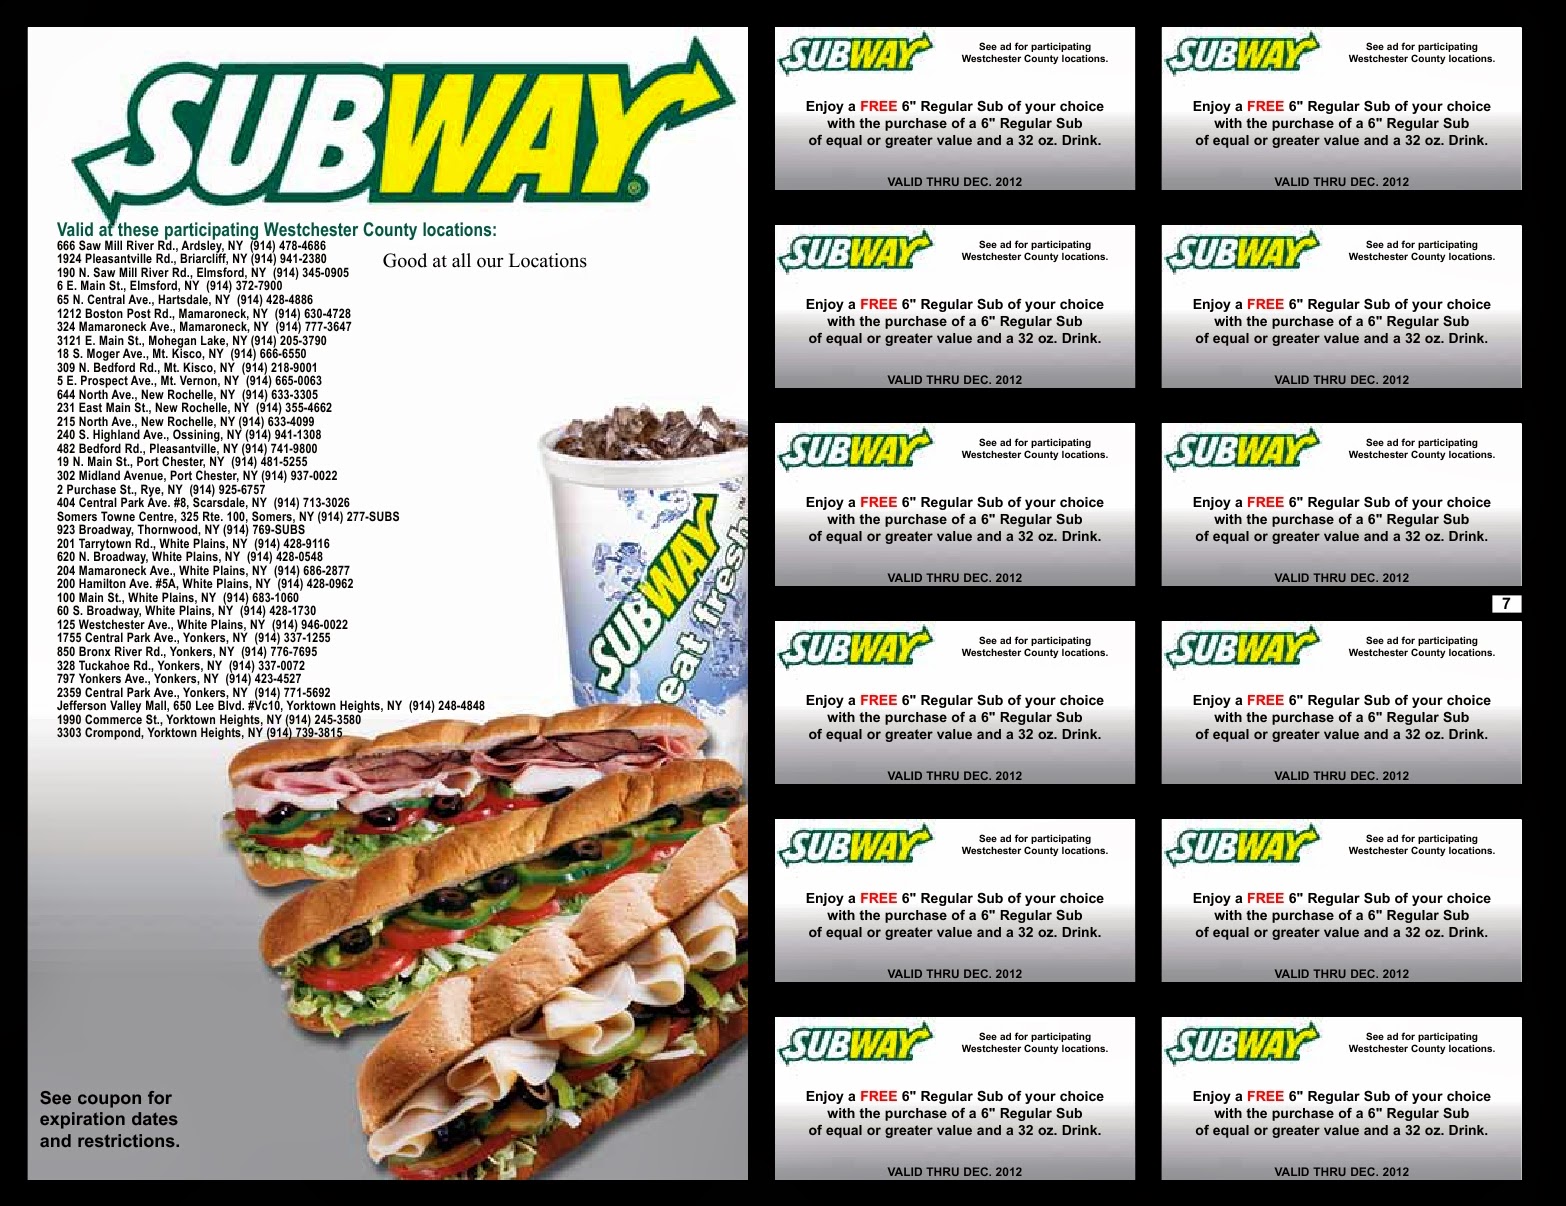  Subway coupons